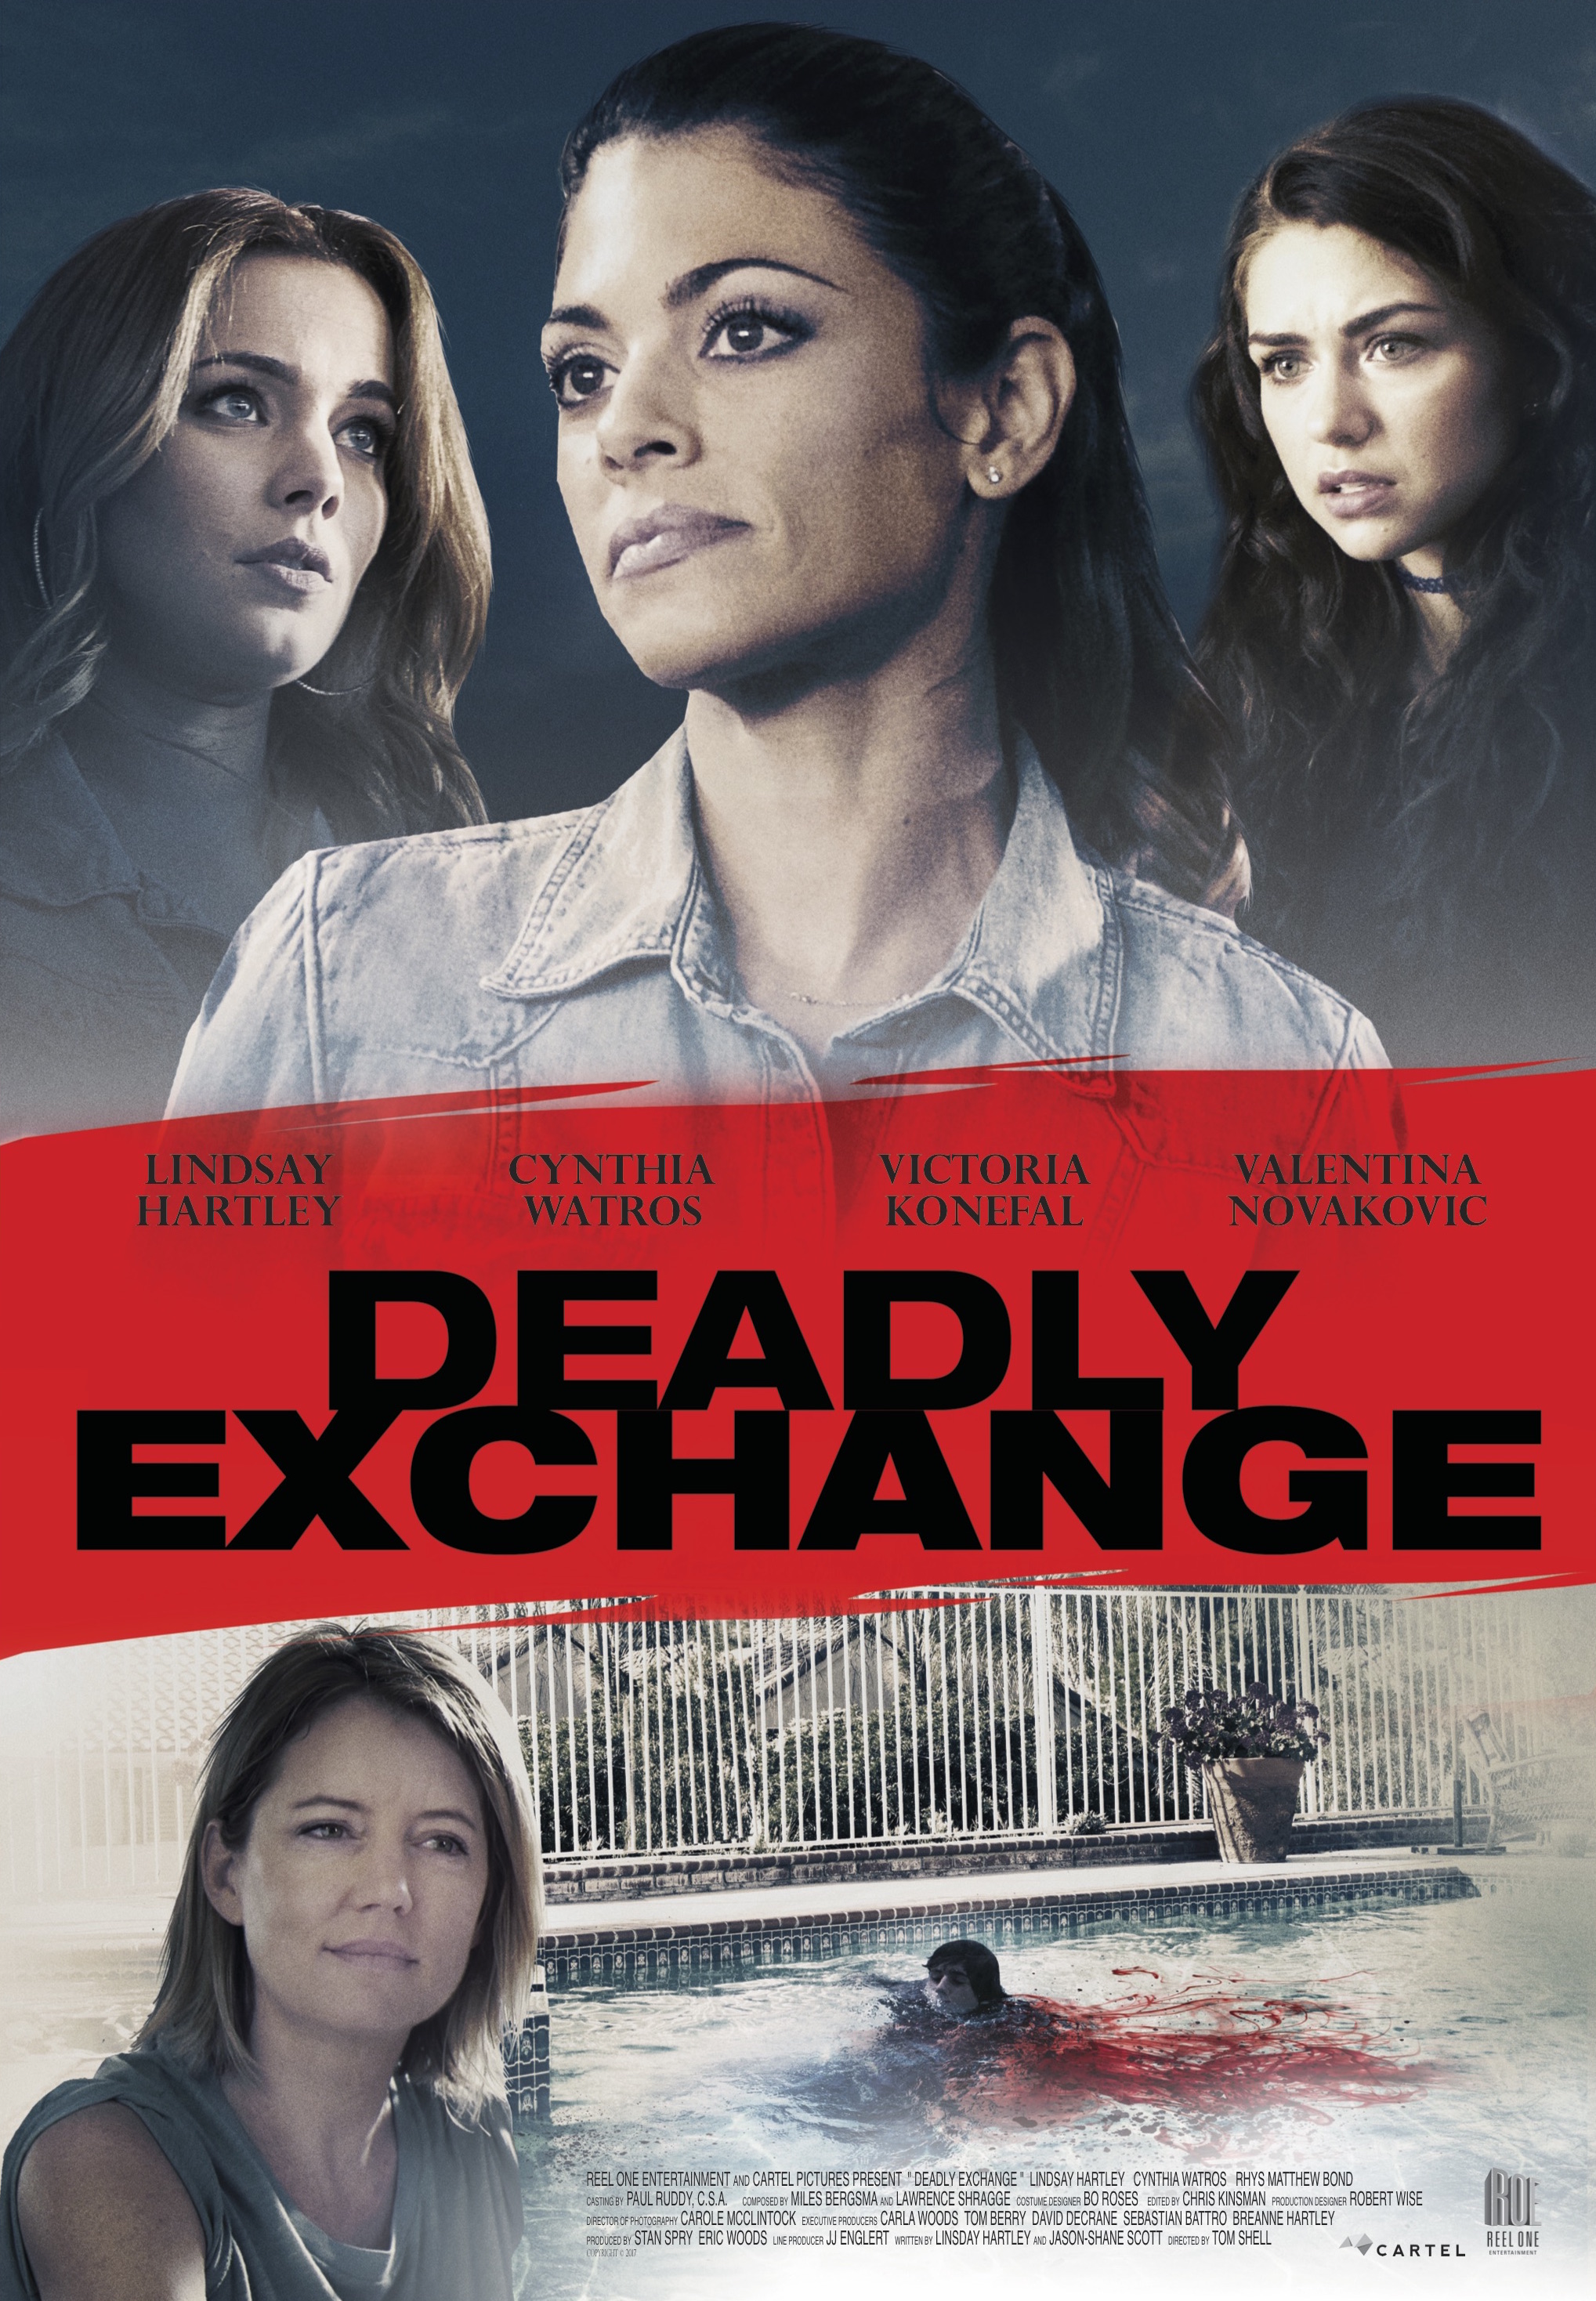 Nonton film Deadly Exchange layarkaca21 indoxx1 ganool online streaming terbaru